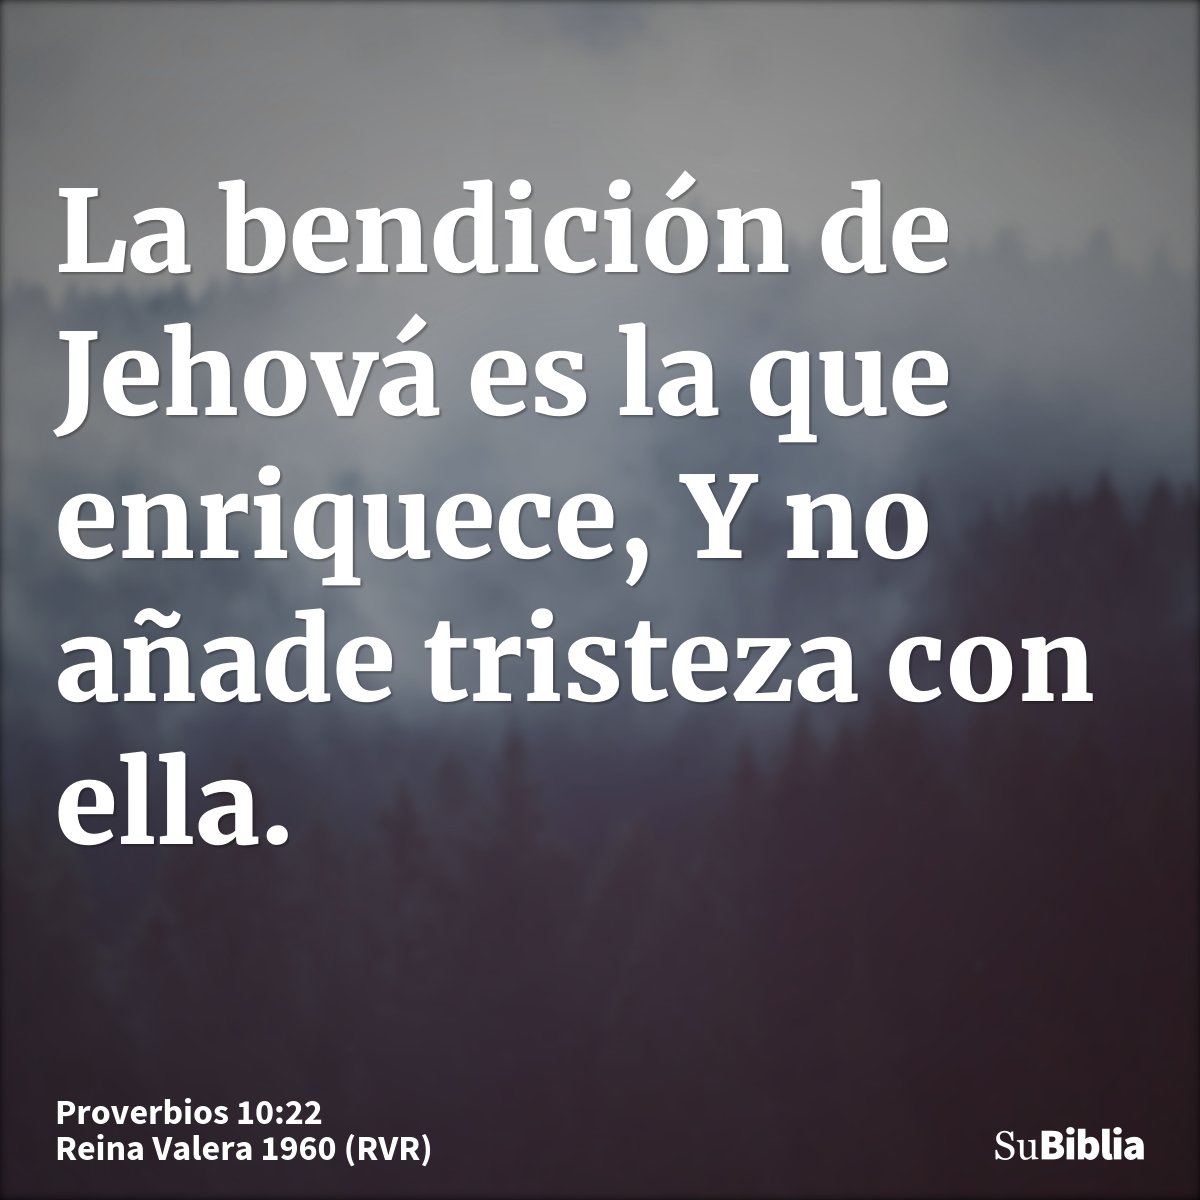 La bendición de Jehová es la que enriquece, Y no añade tristeza con ella.